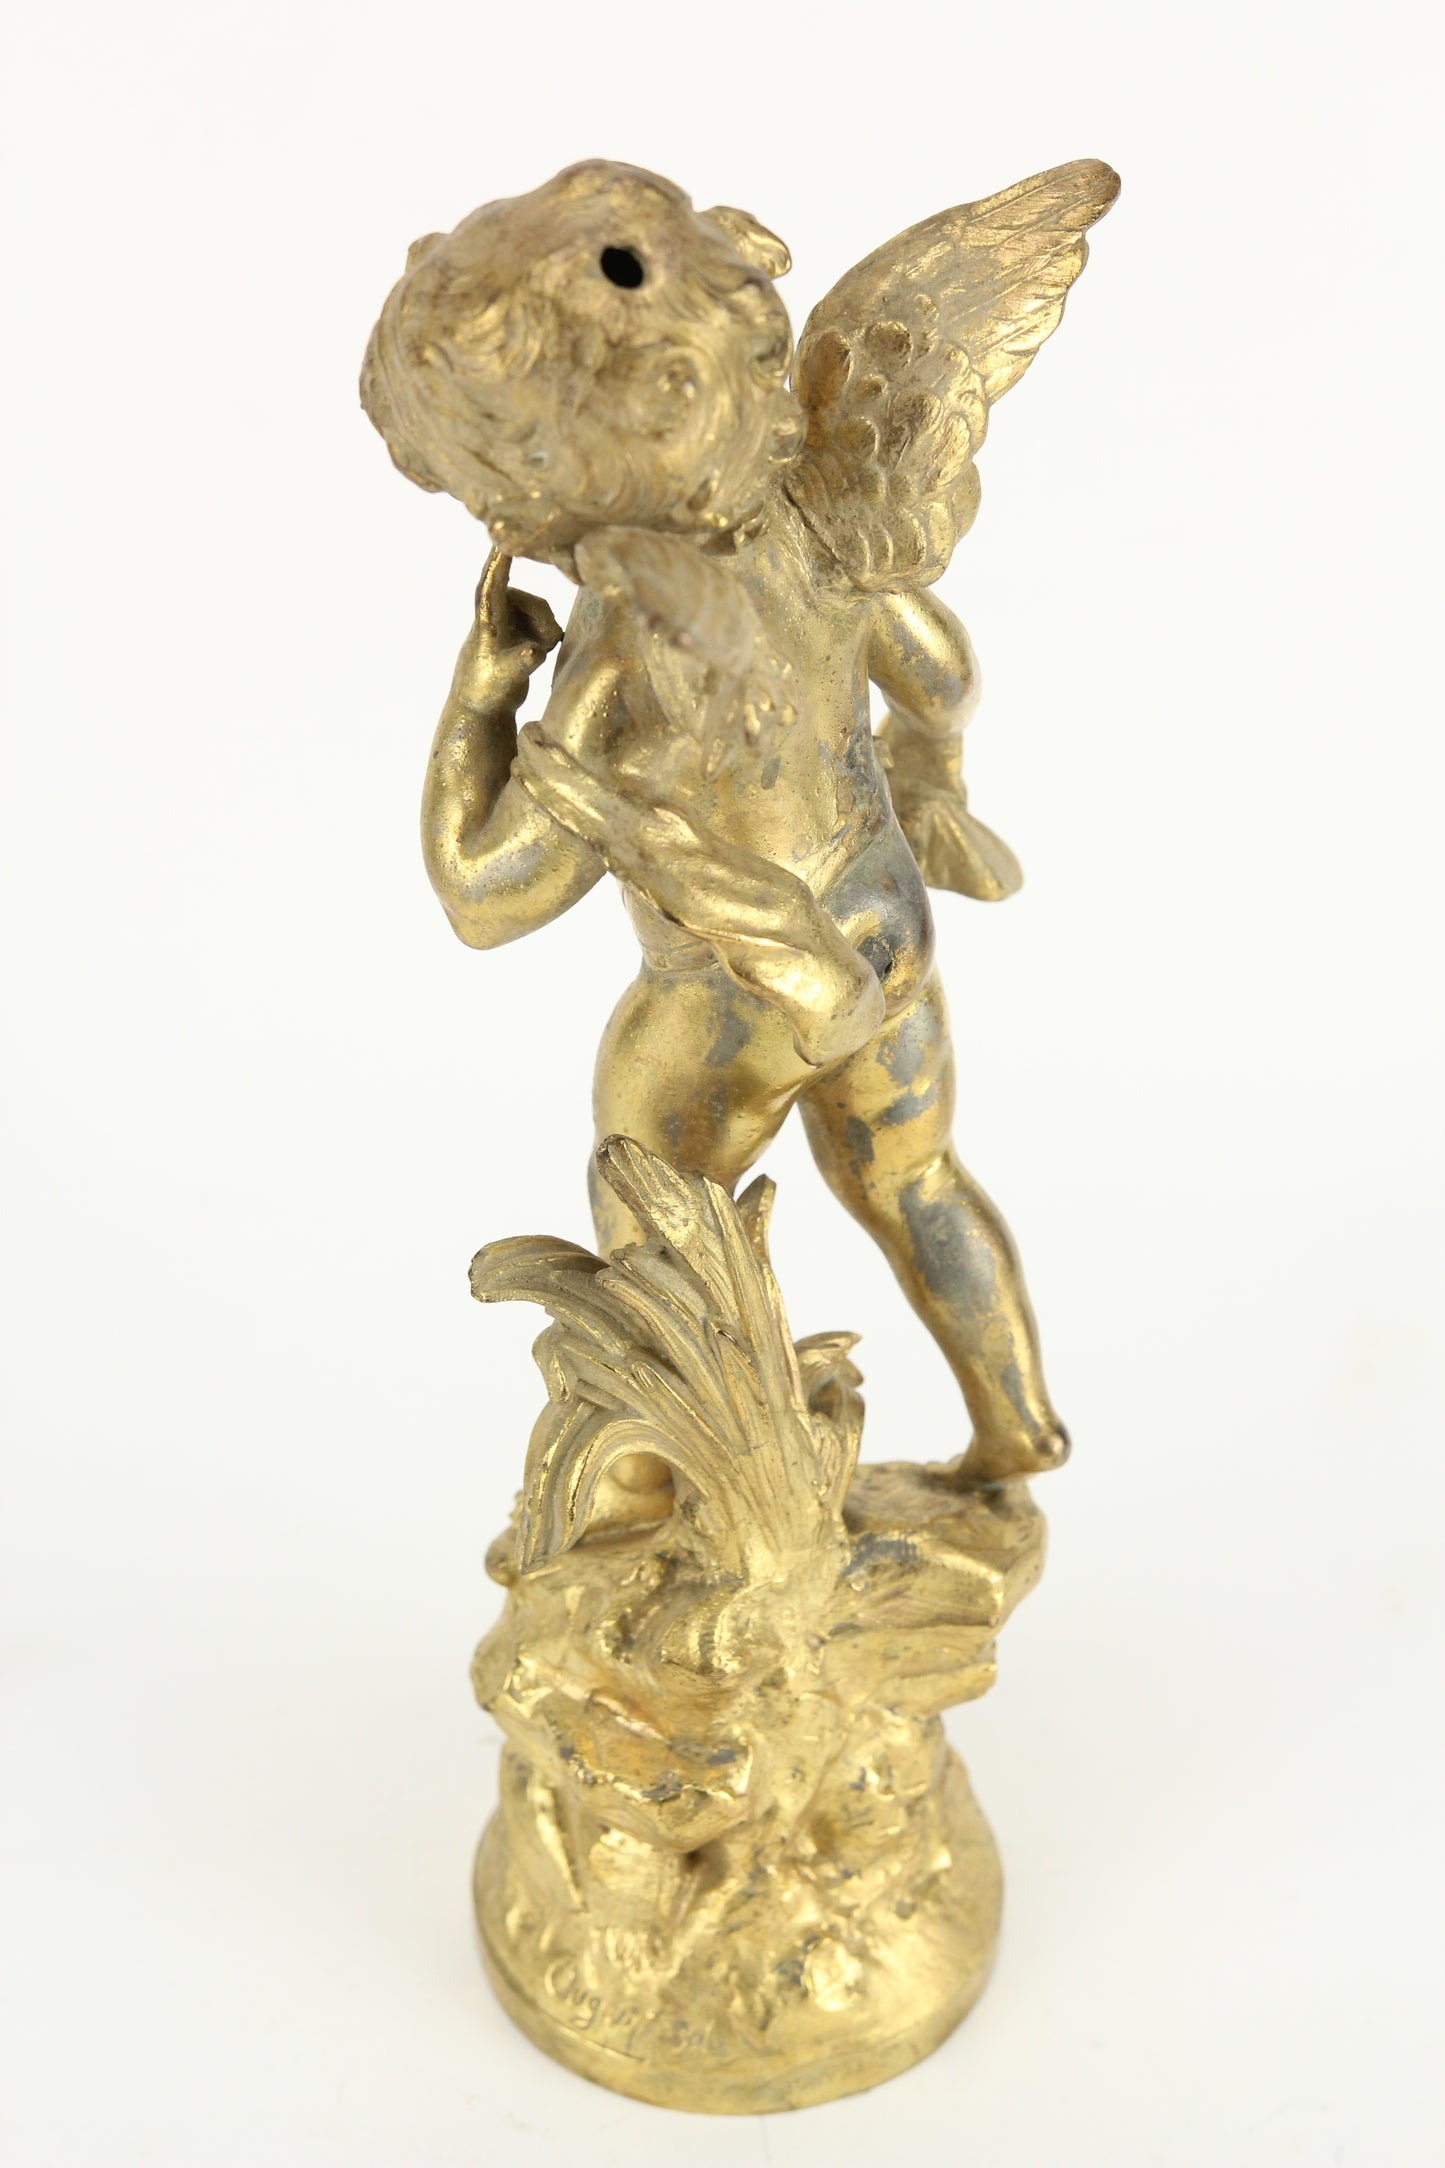 Antique Gold-Toned Pot Metal Clock Topper Statue of a Cherub